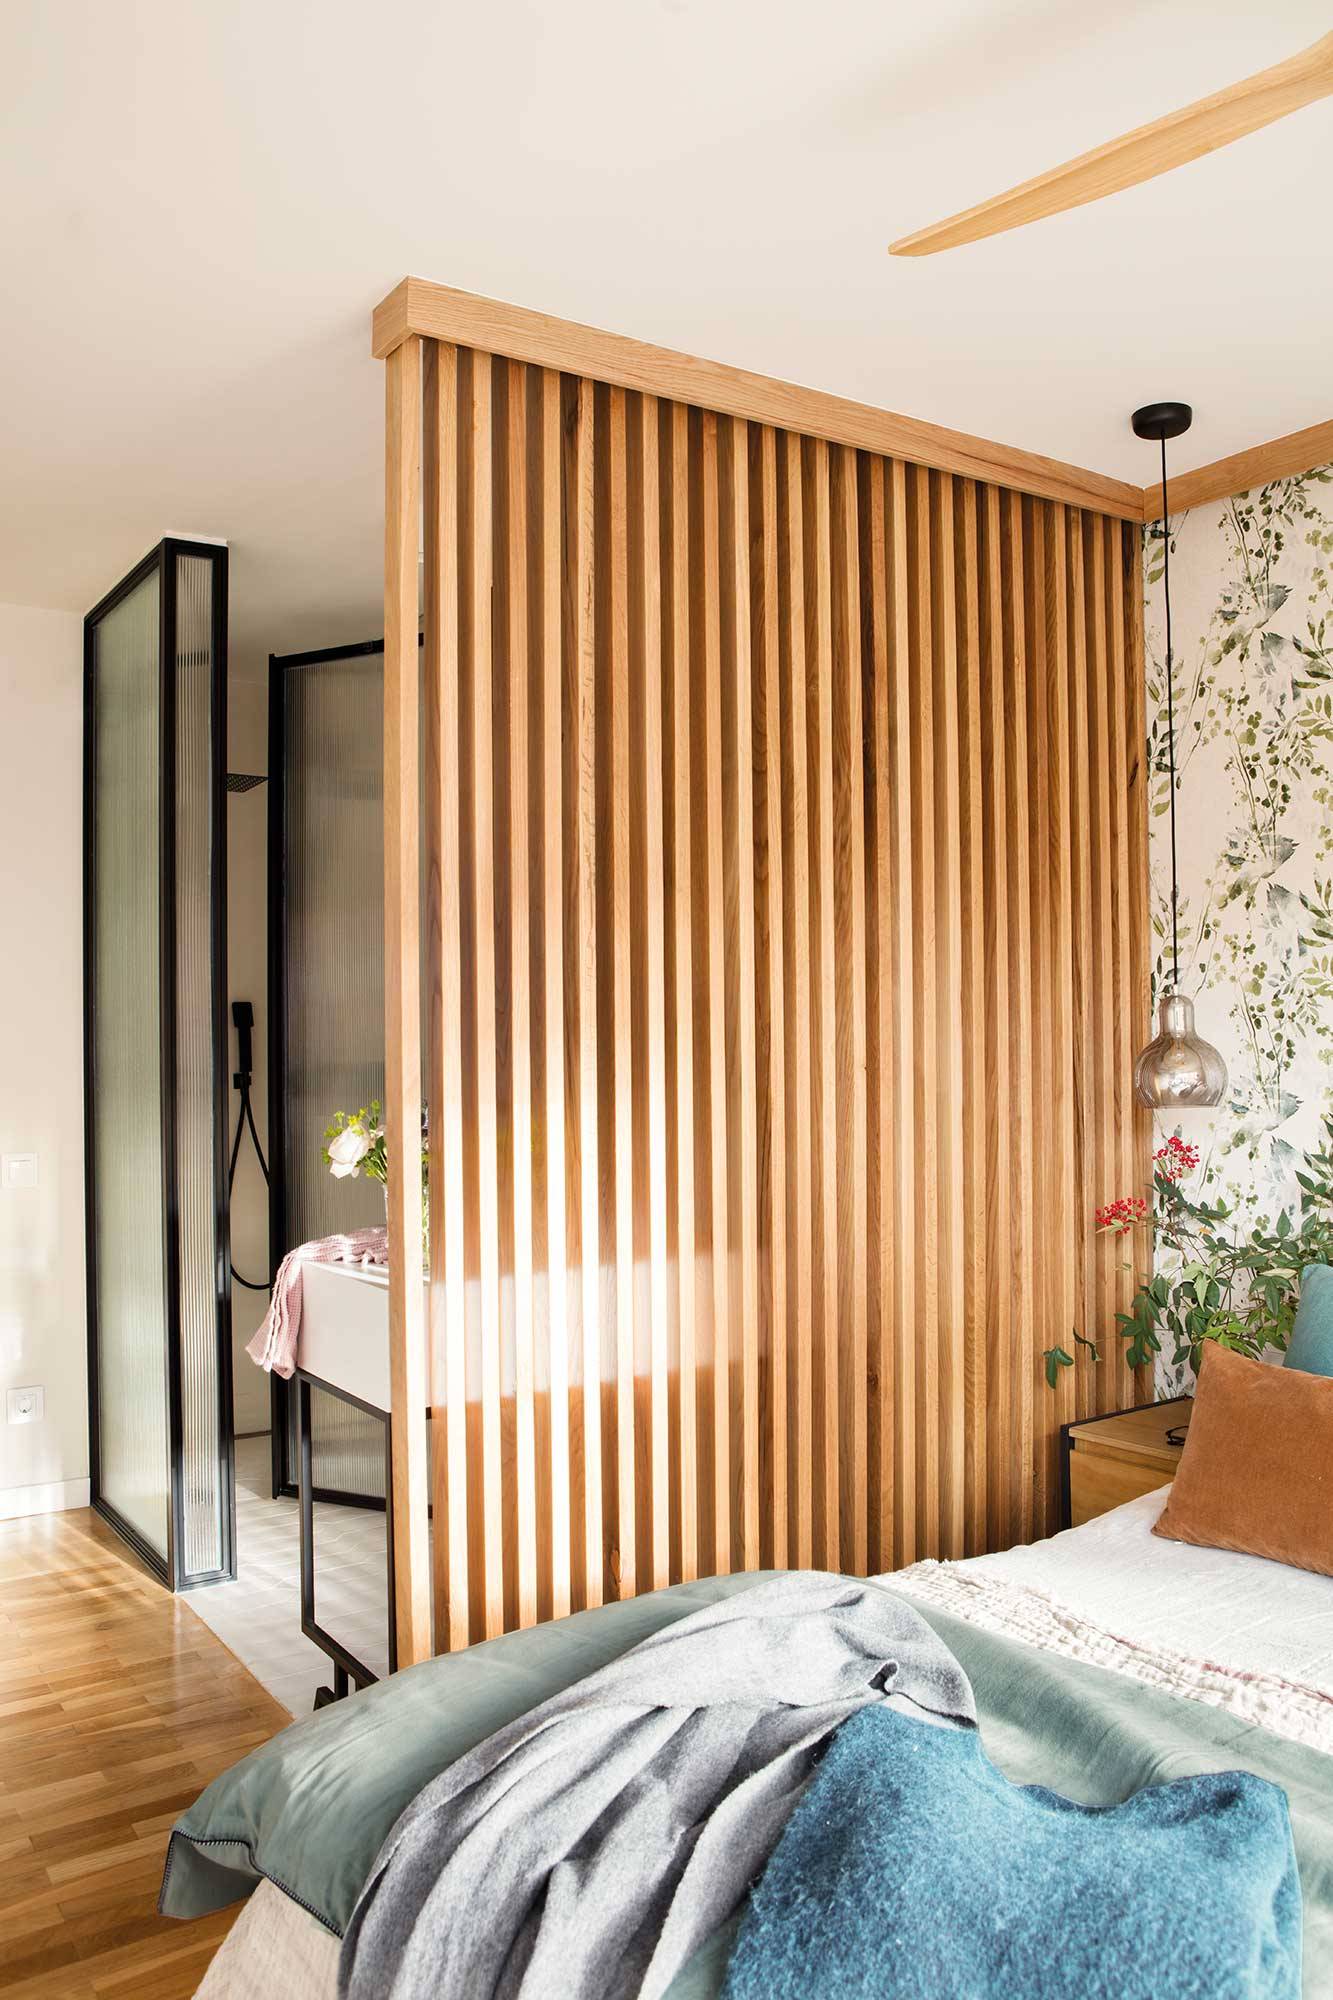 Dormitorio con celosía de madera que separa el baño.m 